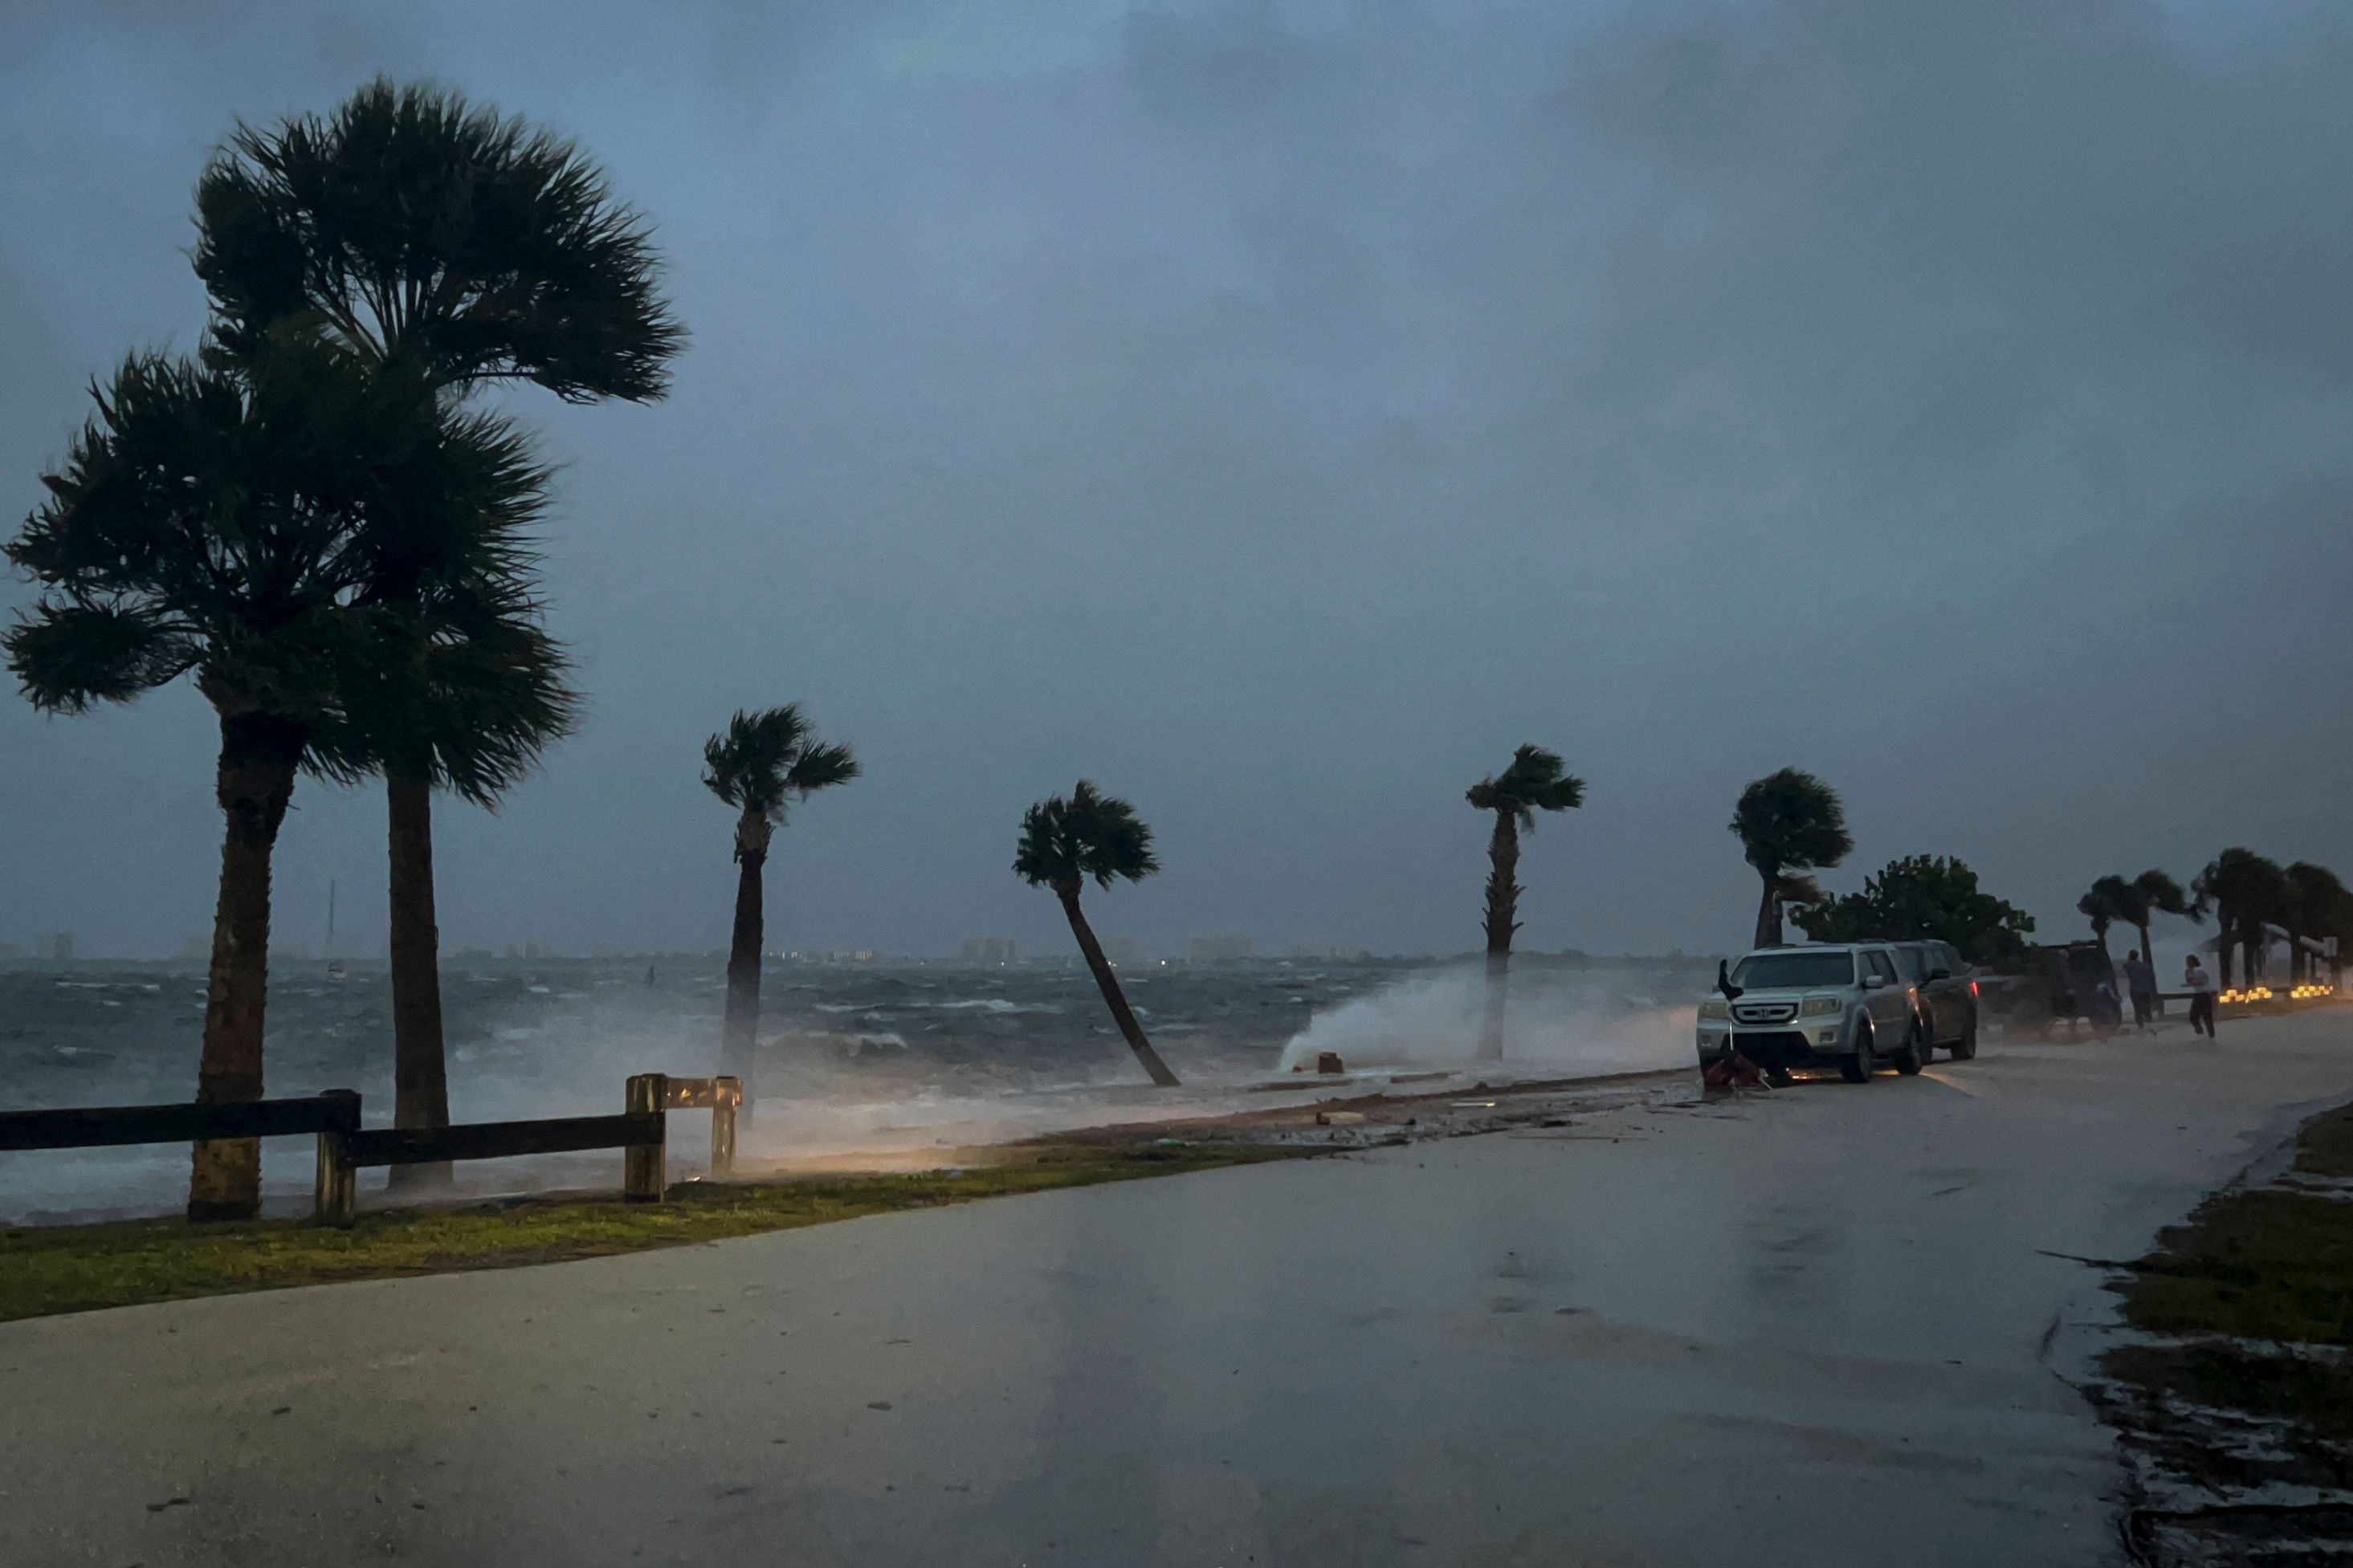 El huracán Nicole golpea el norte de Bahamas de camino a la costa de Florida. (Foto Prensa Libre: AFP)

